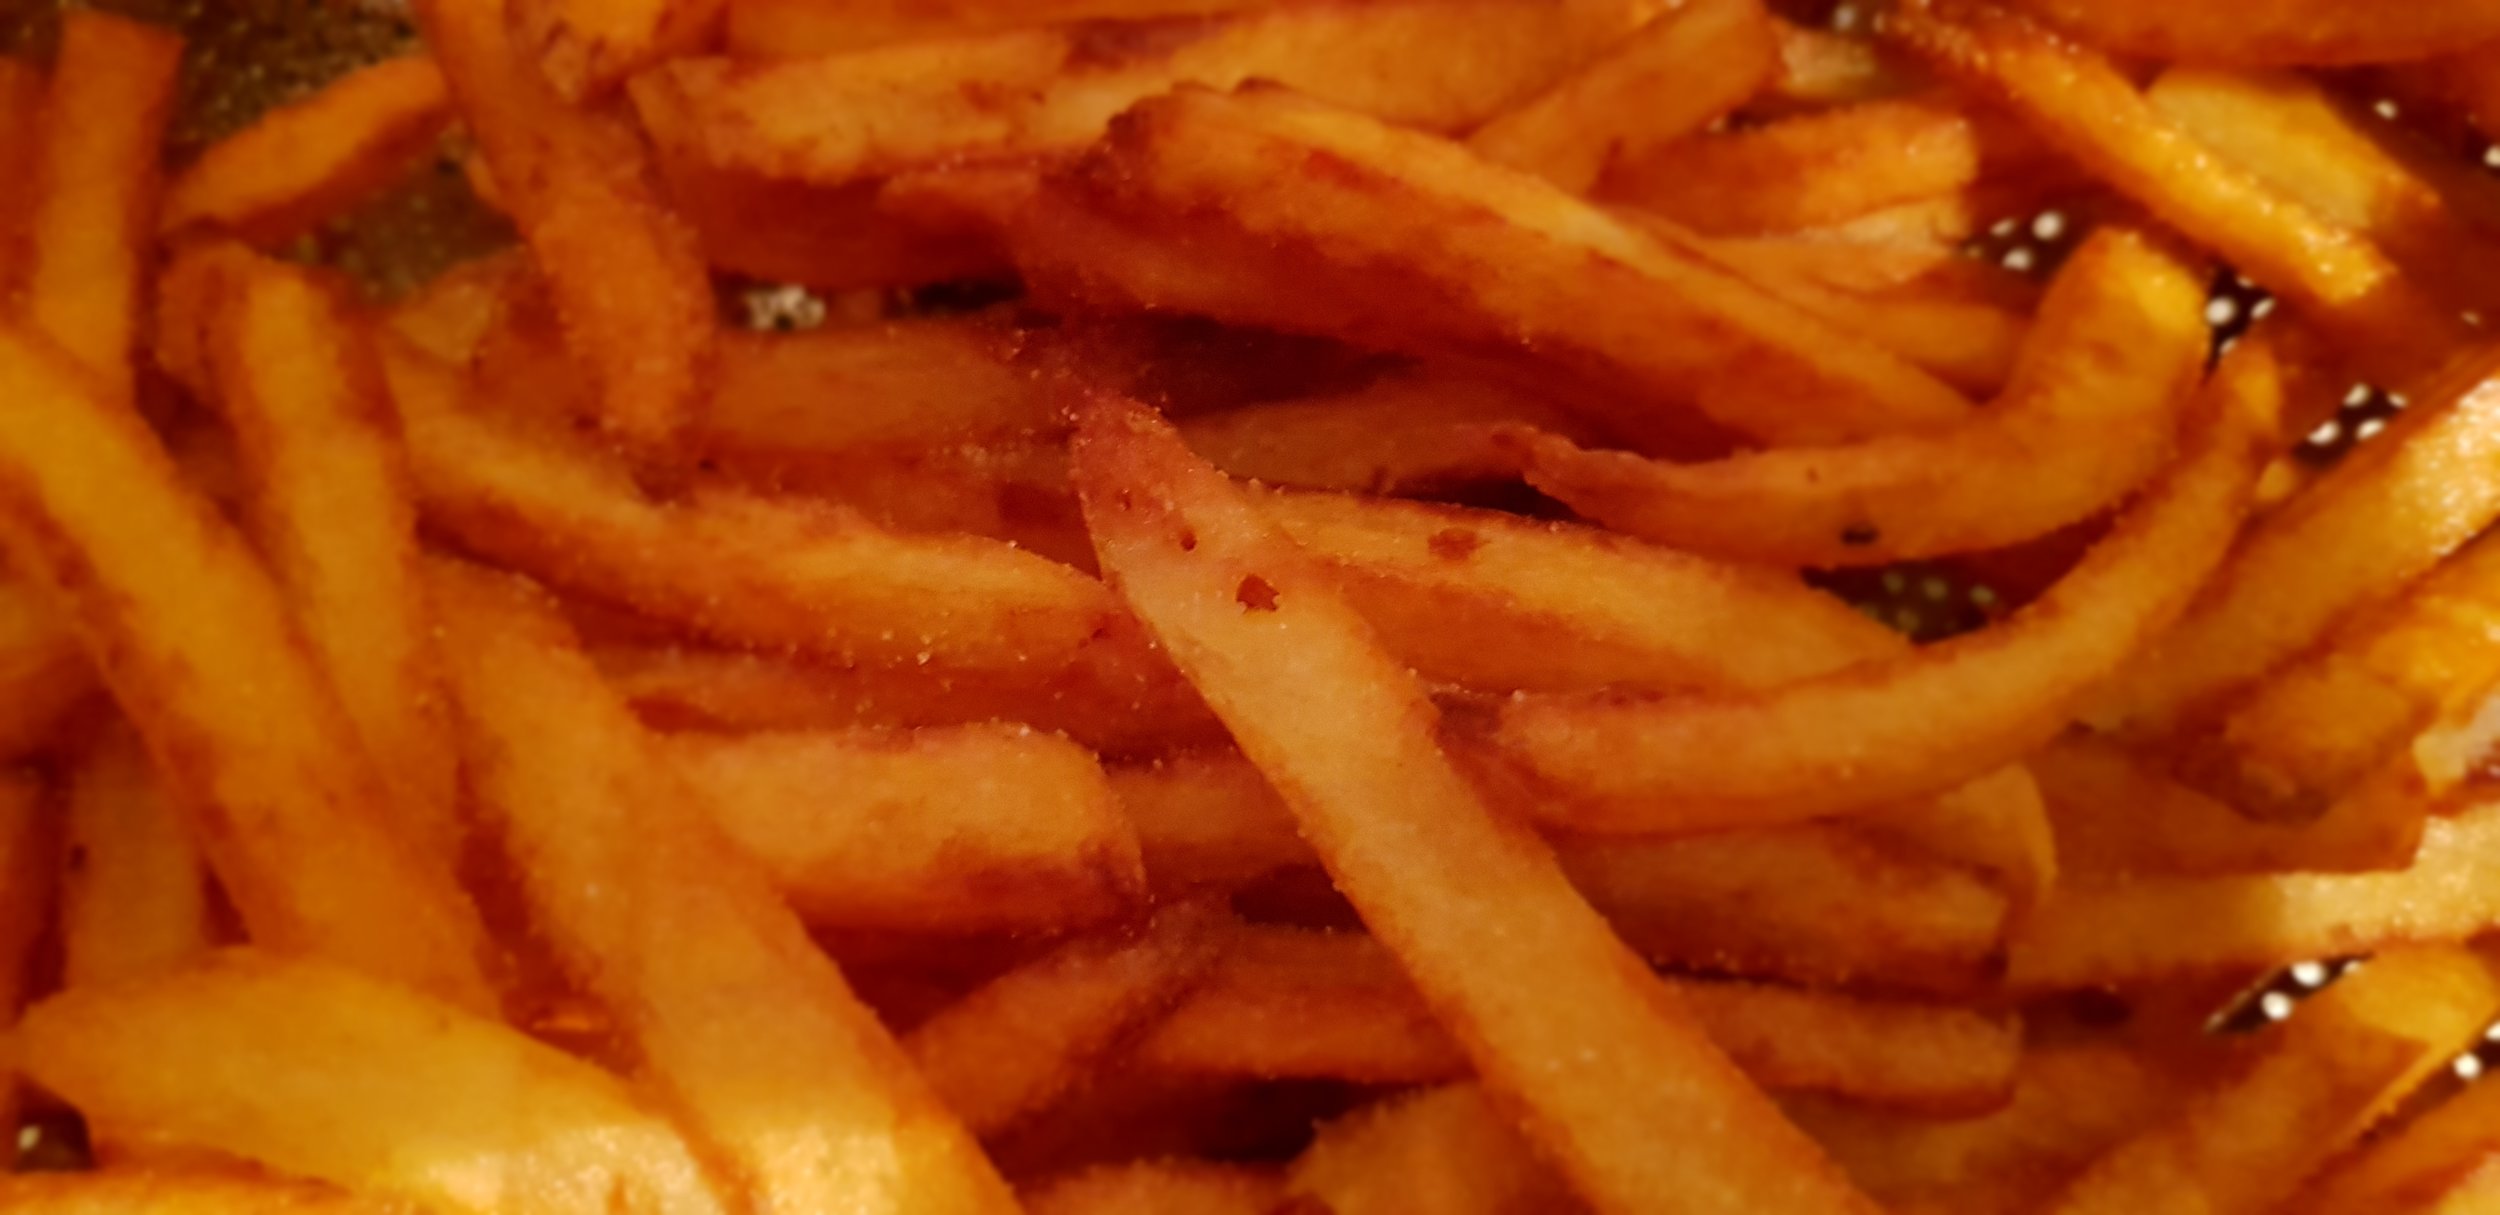 poutine fries 2.jpg